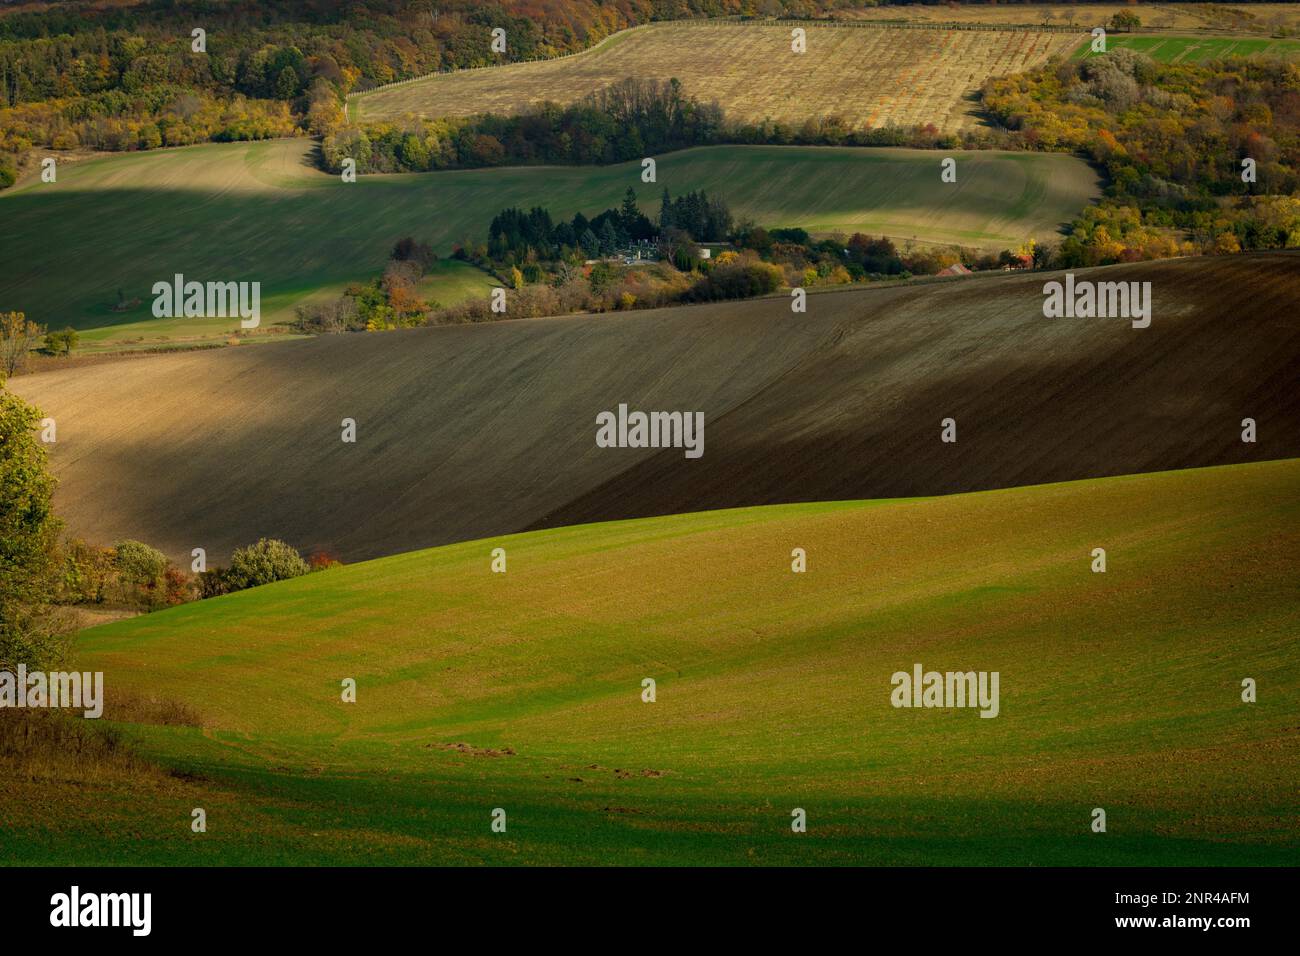 Wunderschöne Landschaft mit gepflügten mährischen Feldern im Herbst. Tschechische republik, Mährisch, Tschechische republik Stockfoto